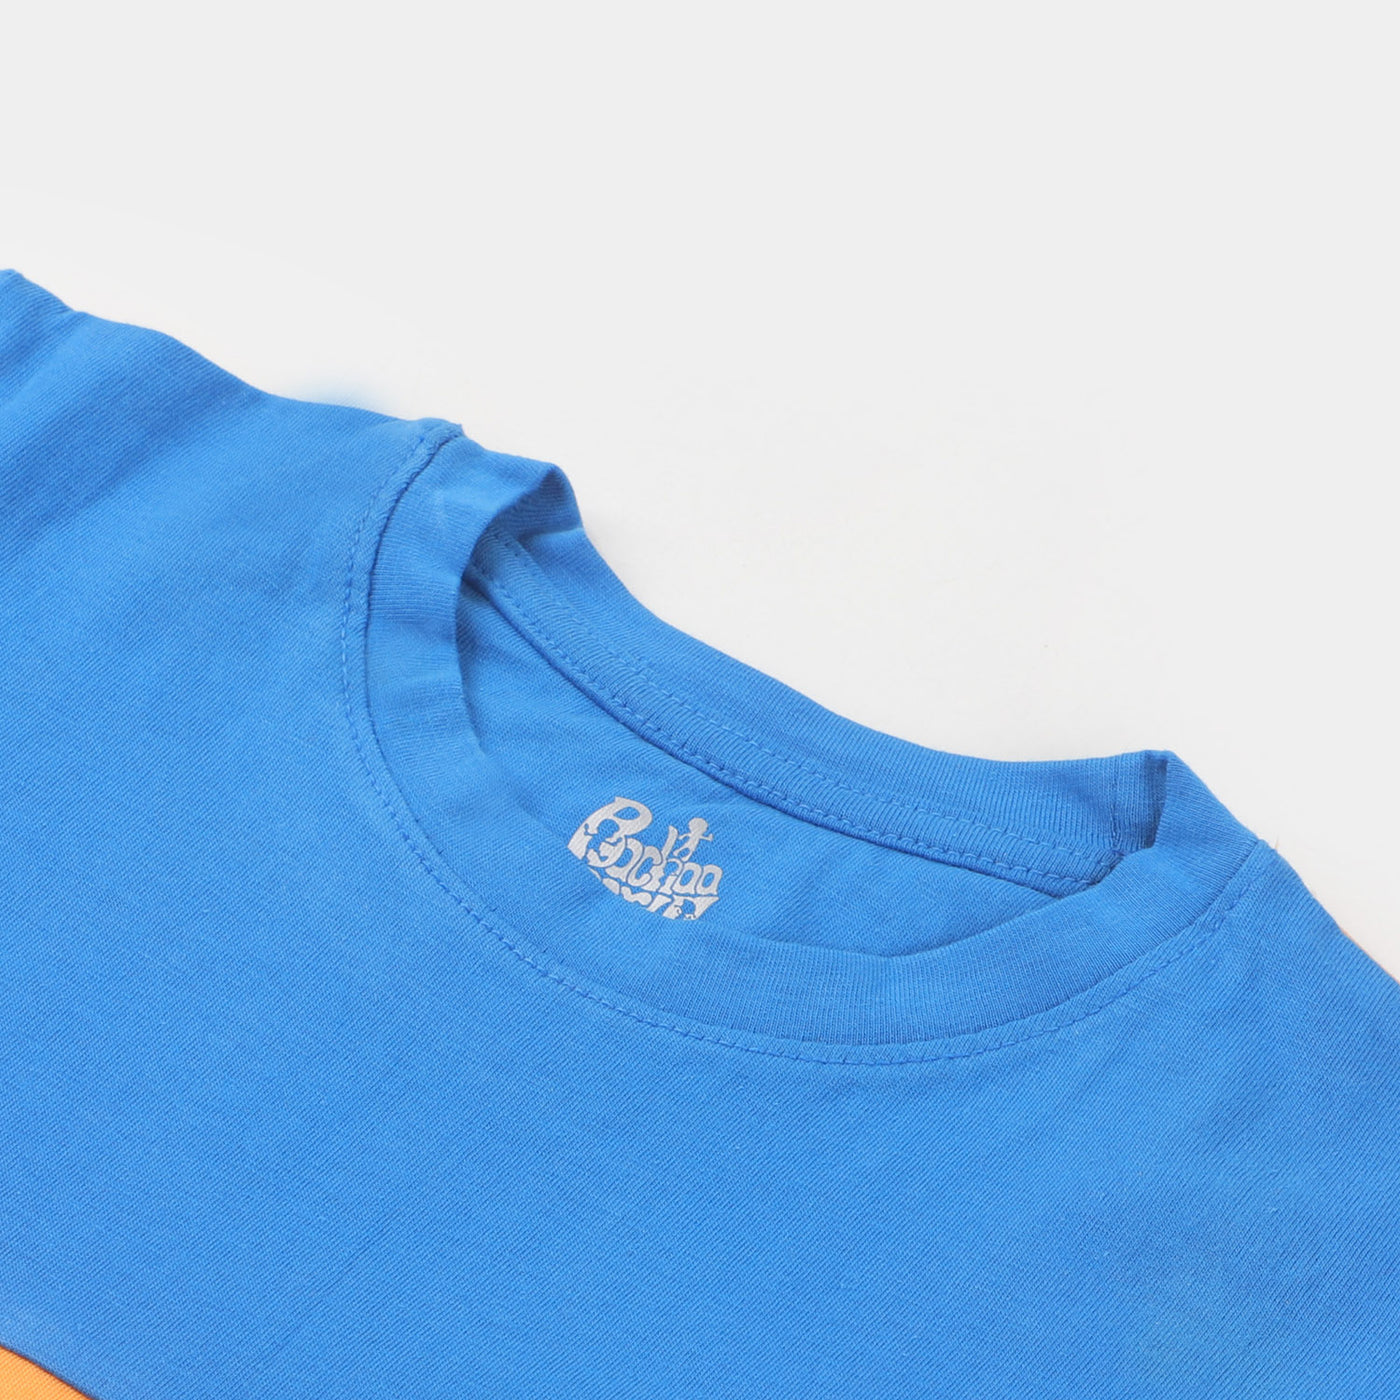 Boys Cotton T-Shirt Color Block - Orange/Blue